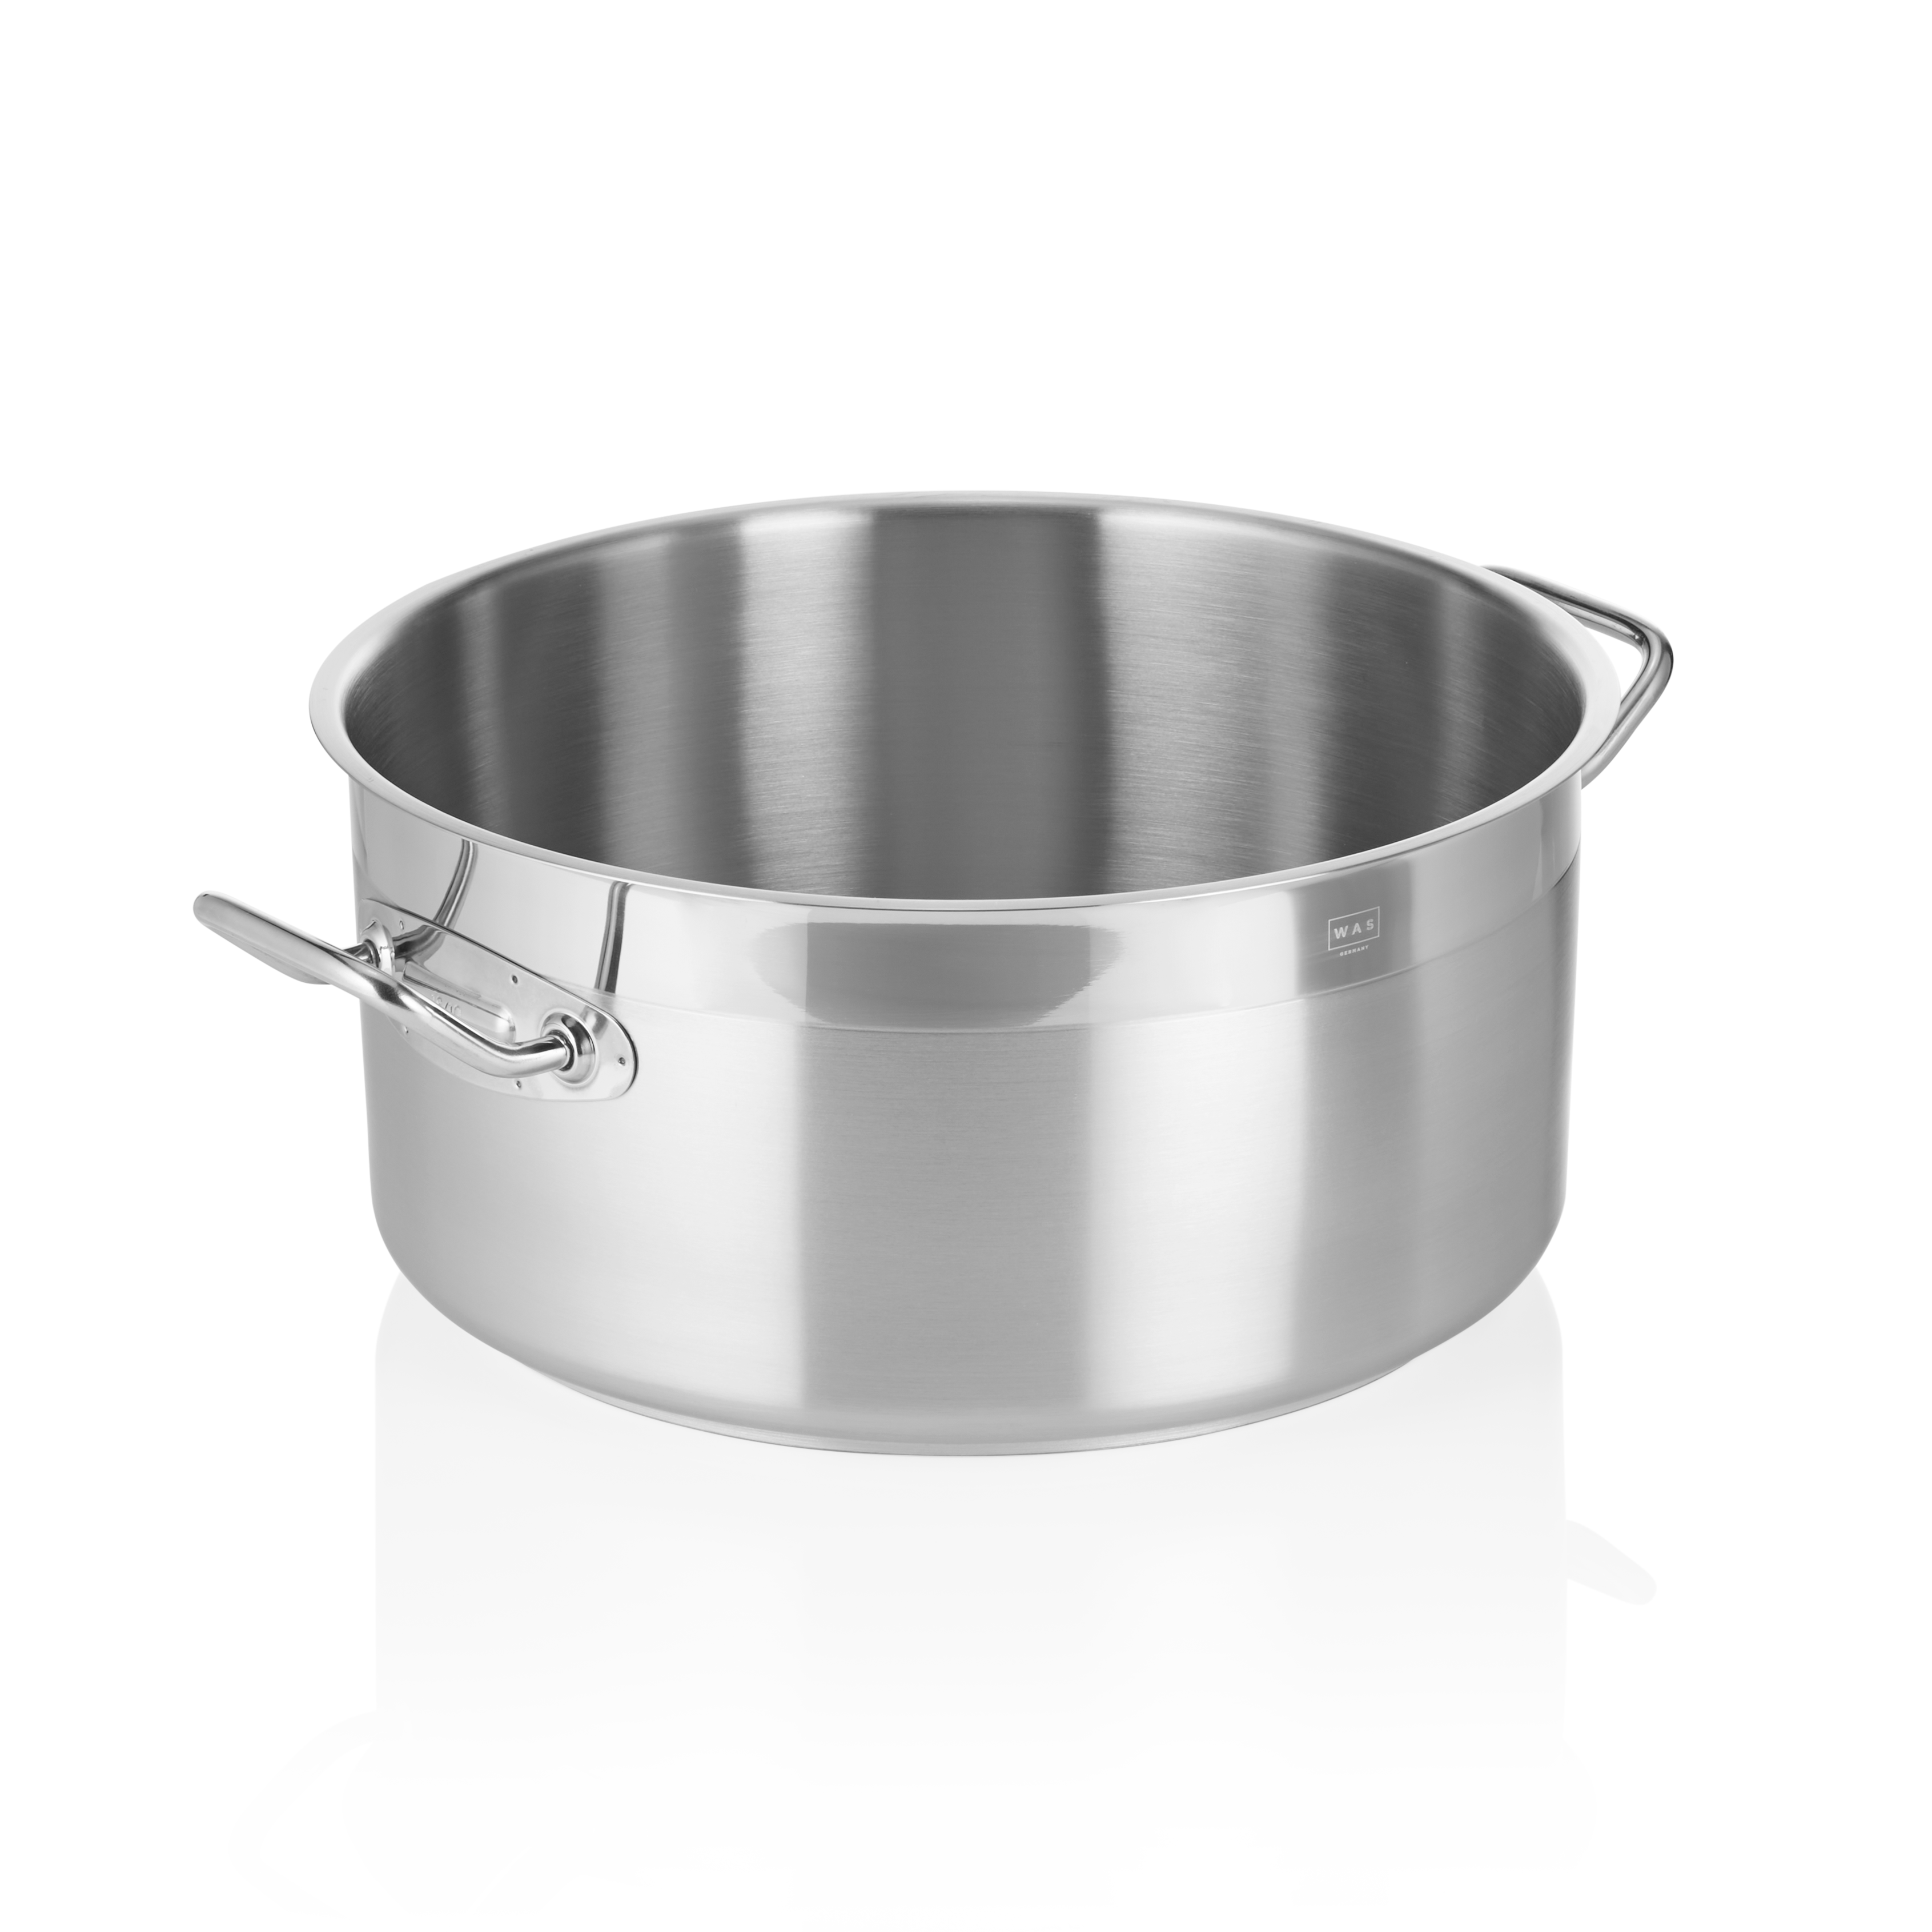 Bratentopf Cookware 21, Ø 32 cm, 12,0 Liter - Höhe 16,0 cm - Edelstahl 18/10